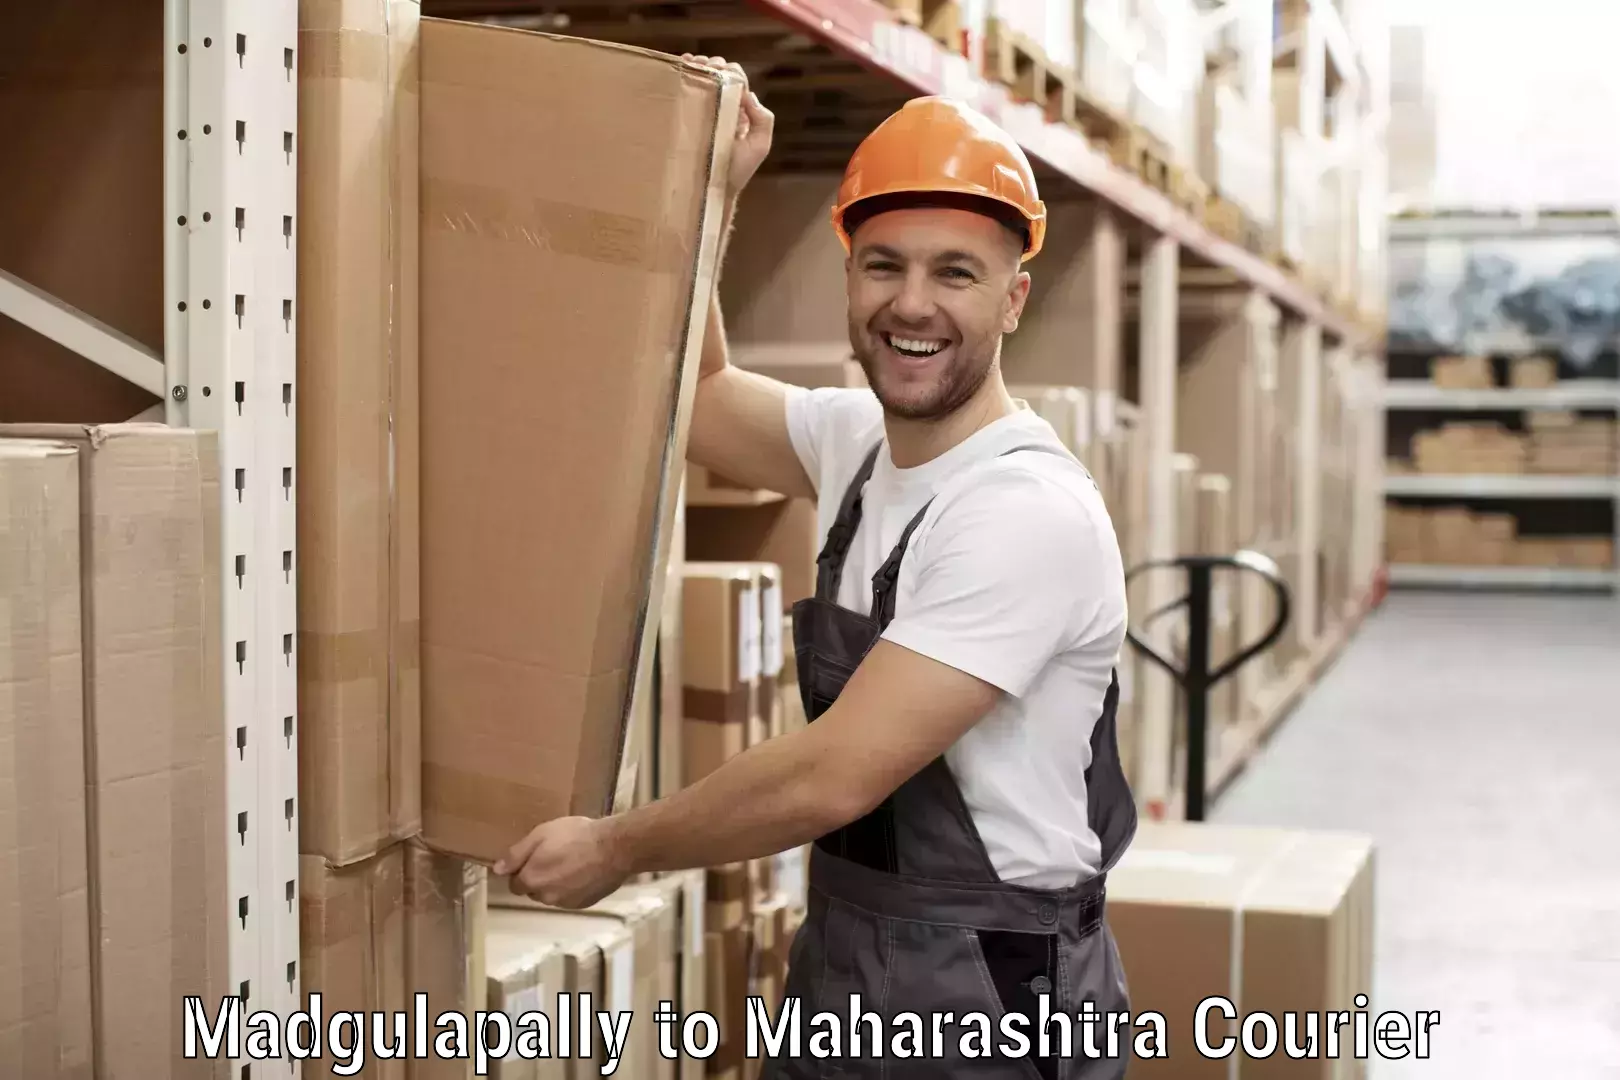 Express courier capabilities Madgulapally to Raigarh Maharashtra